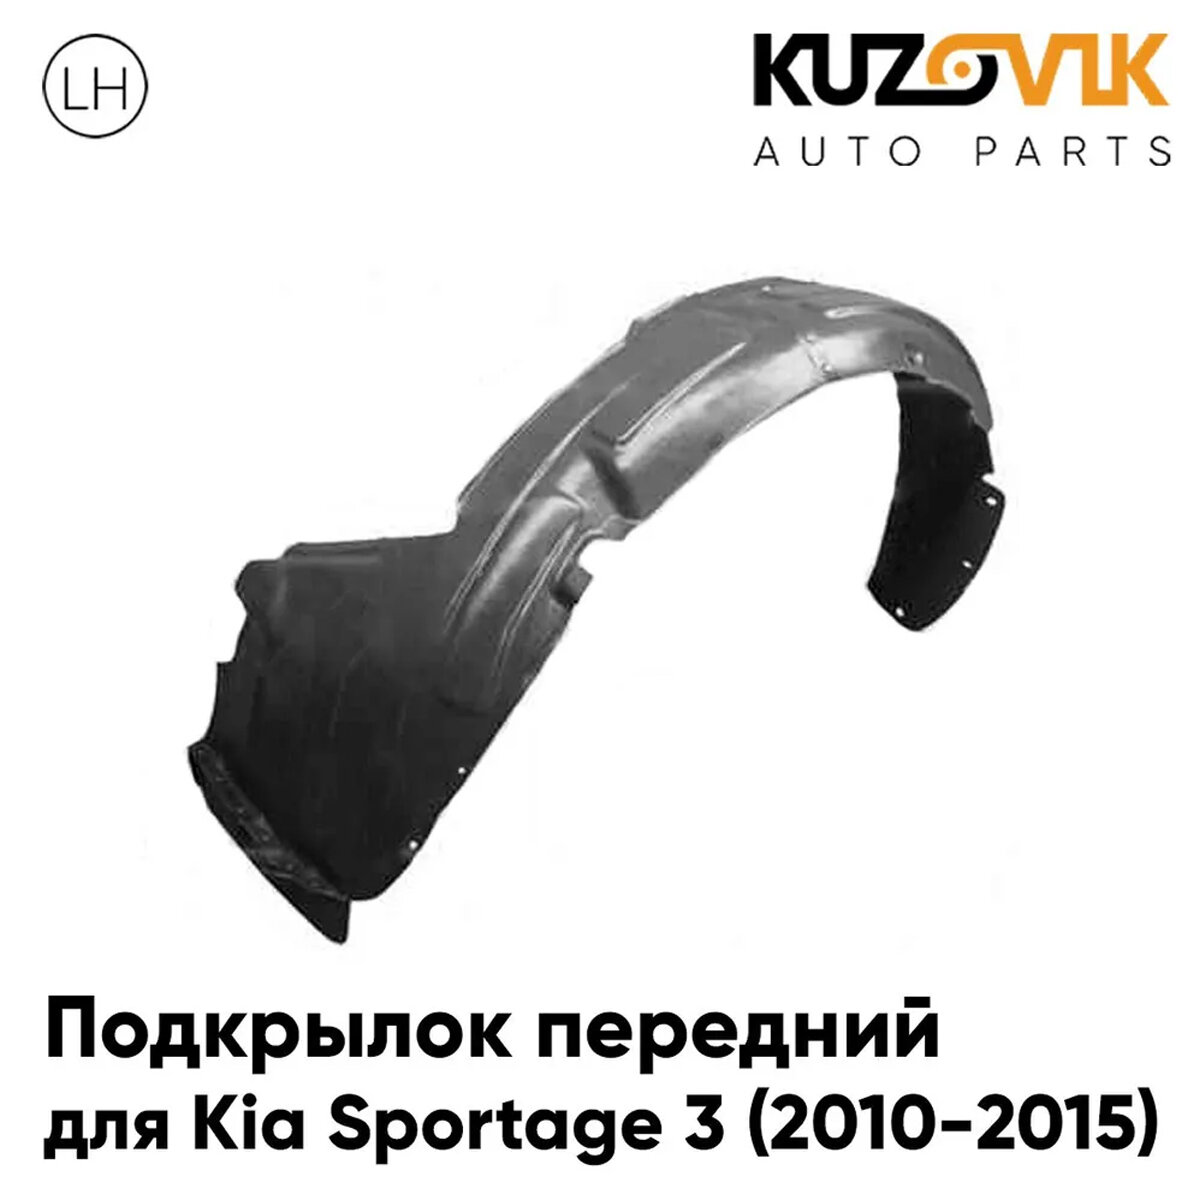 Подкрылок передний для Киа Спортейдж Kia Sportage 3 (2010-2015) левый